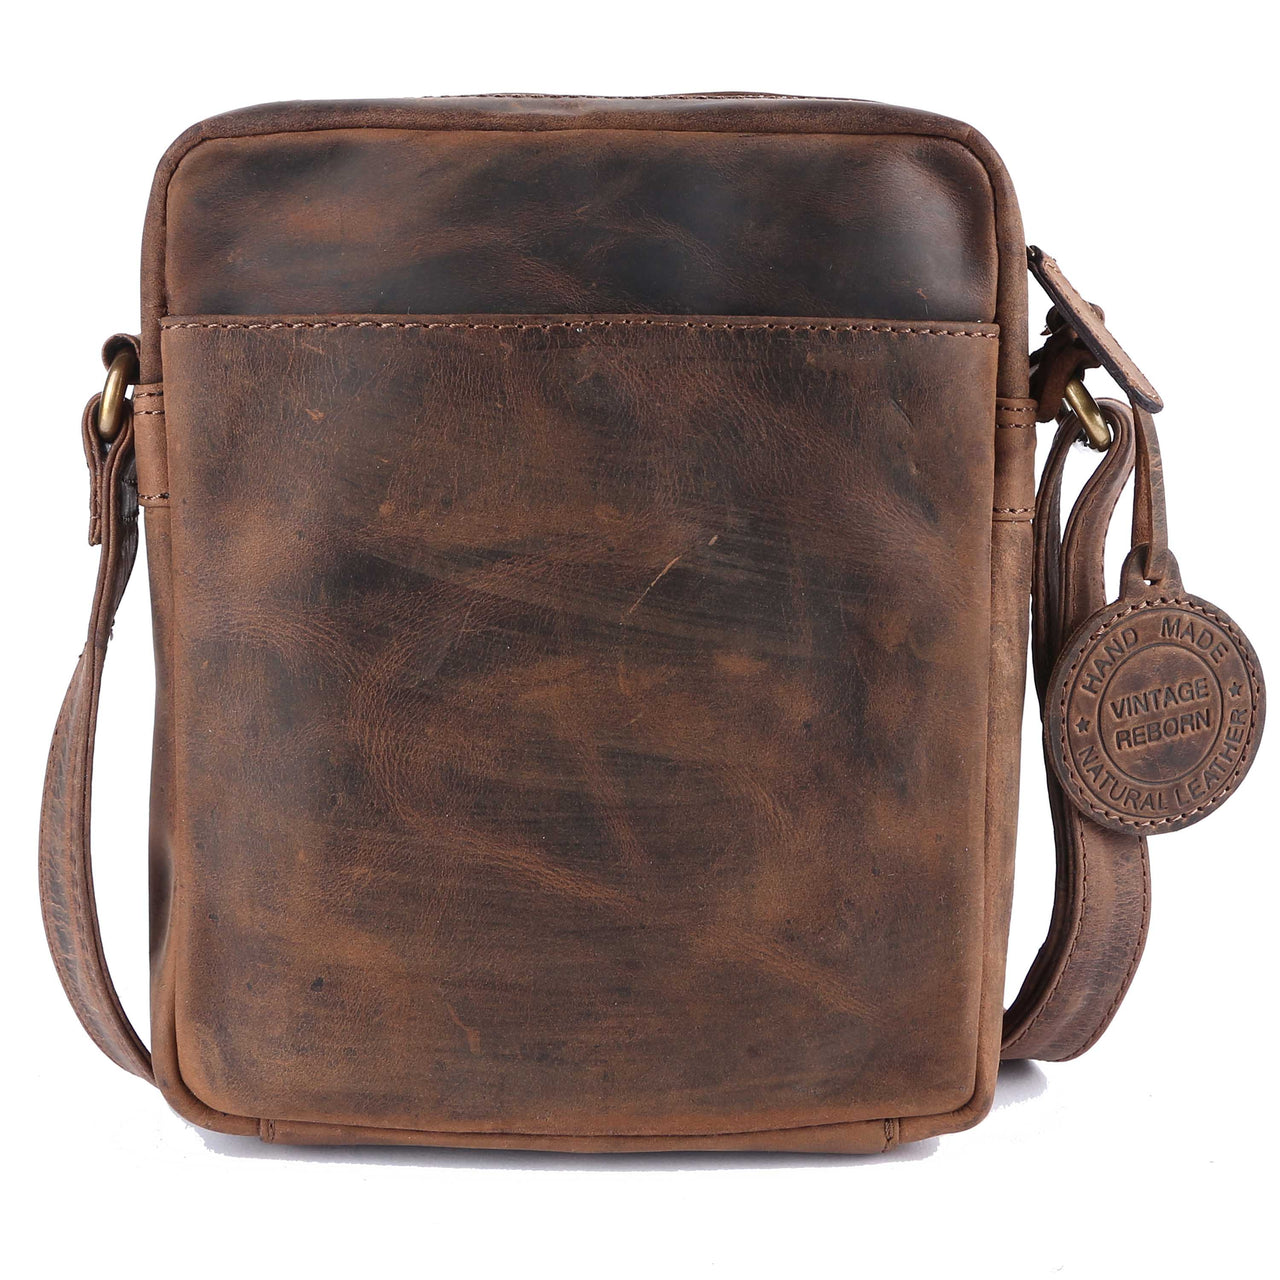 Pinato Genuine Leather Cognac Messenger Bag for Men & Women (PL-5716)